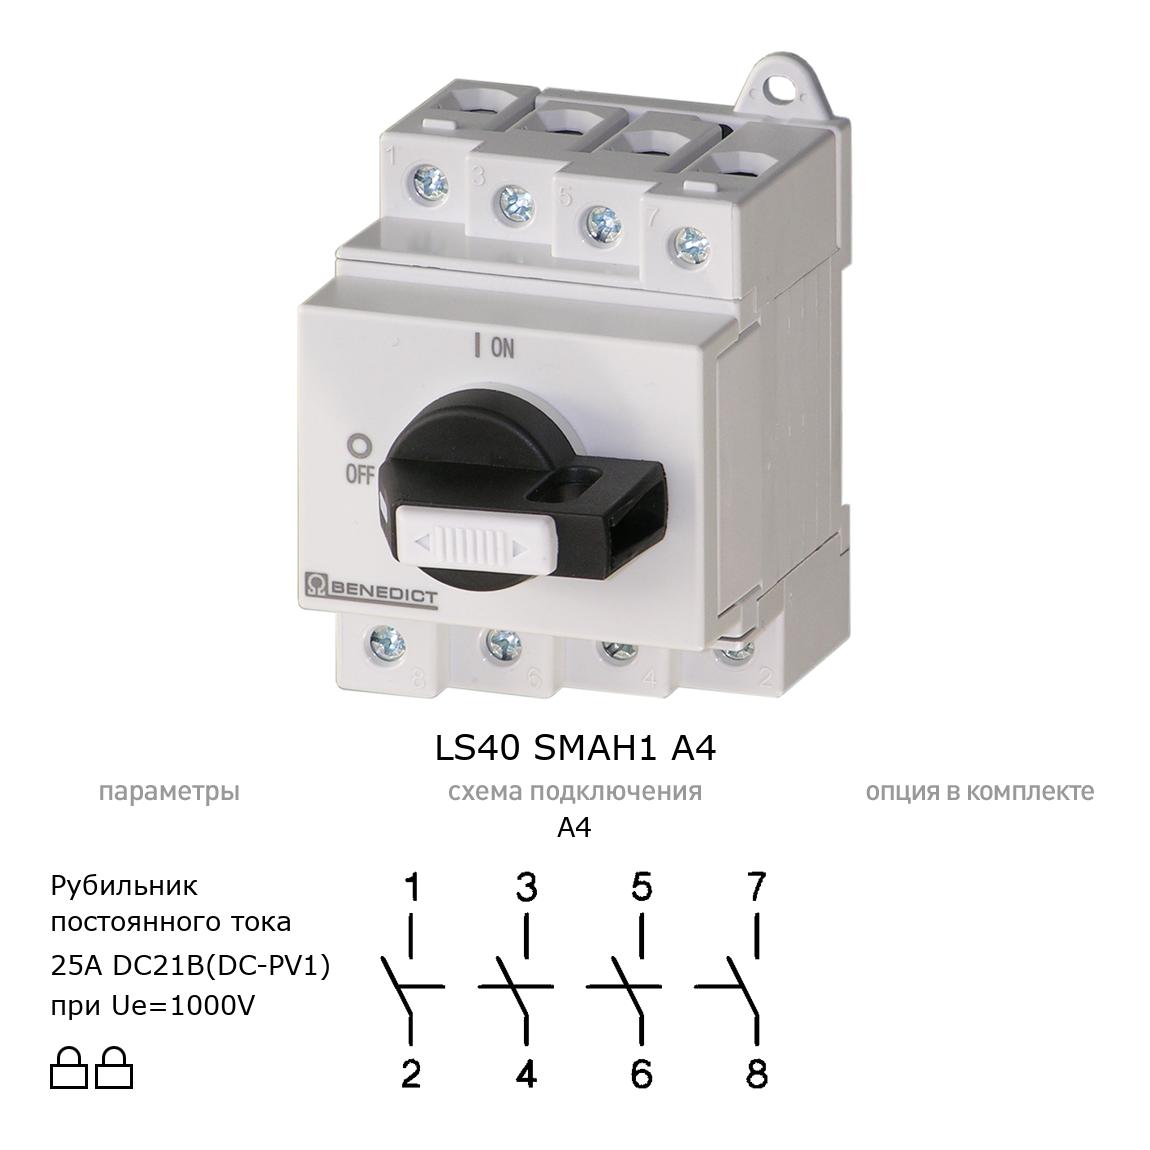 Выключатель нагрузки / рубильник для постоянного тока (DC) LS40 SMAH1 A4 BENEDICT